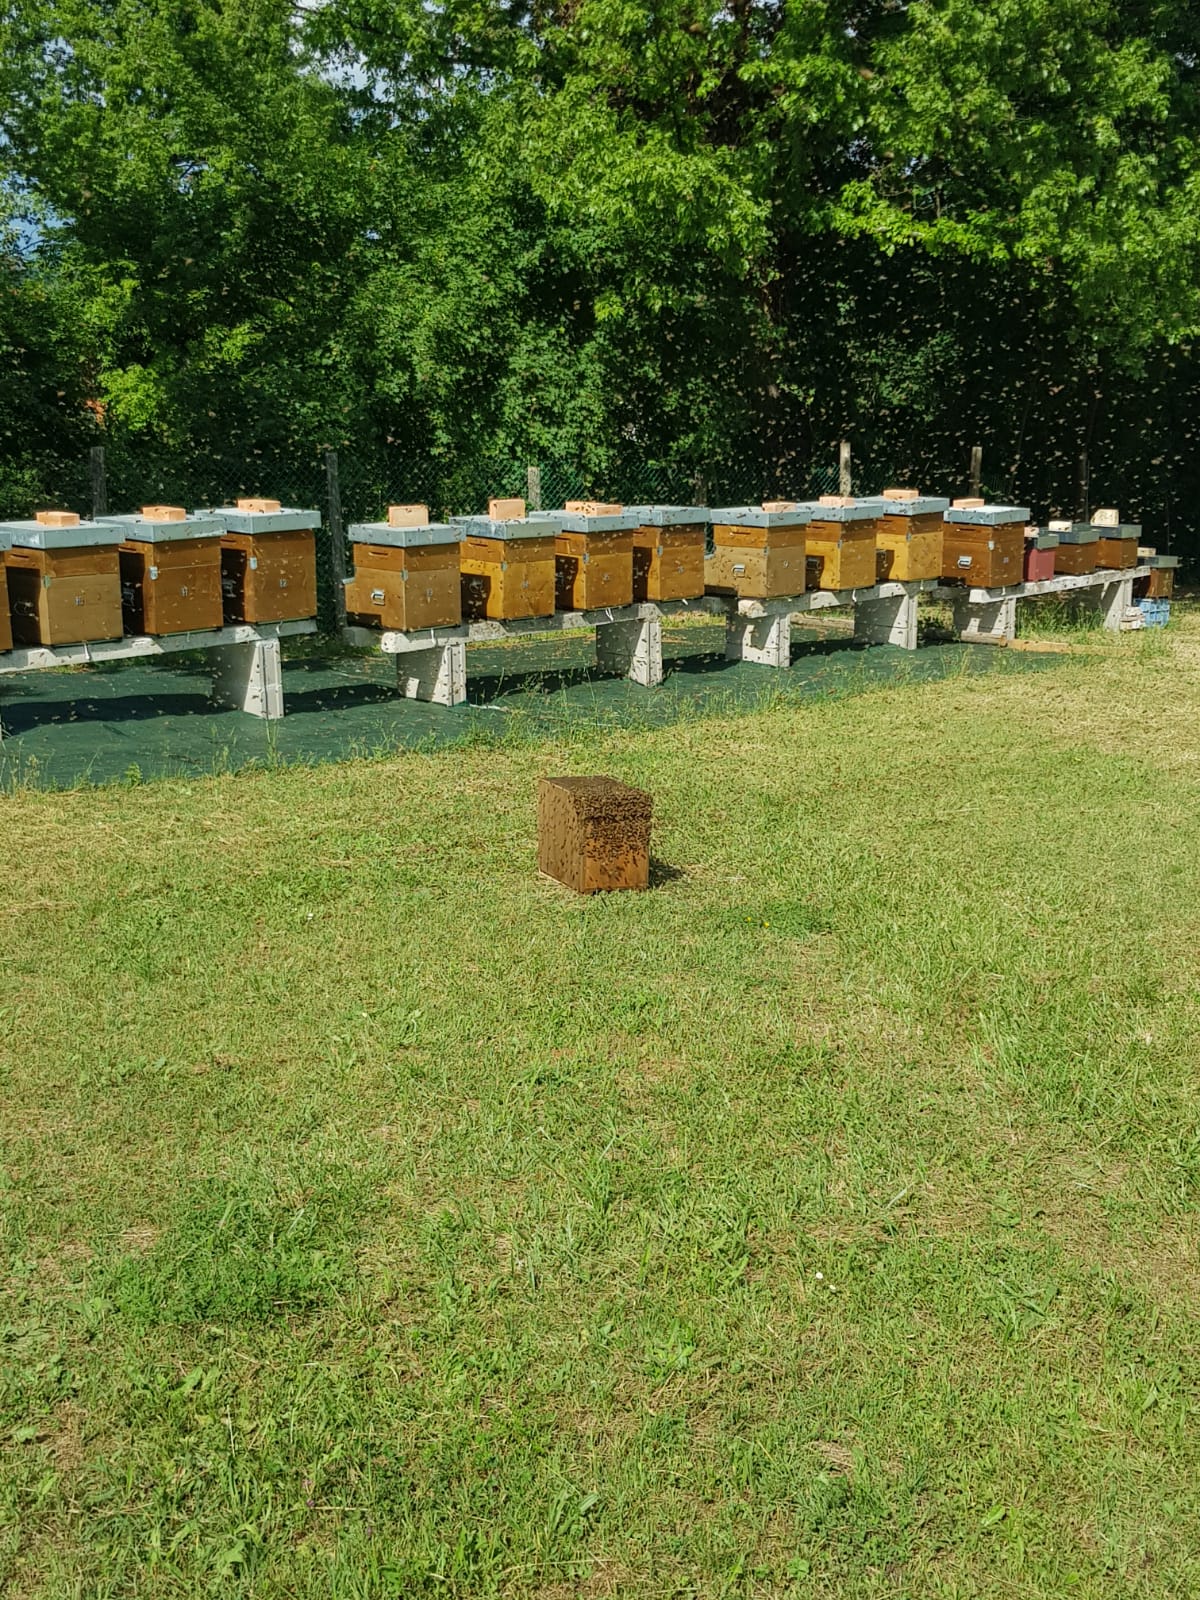 Halten einer angemessenen Anzahl von Bienenstöcken